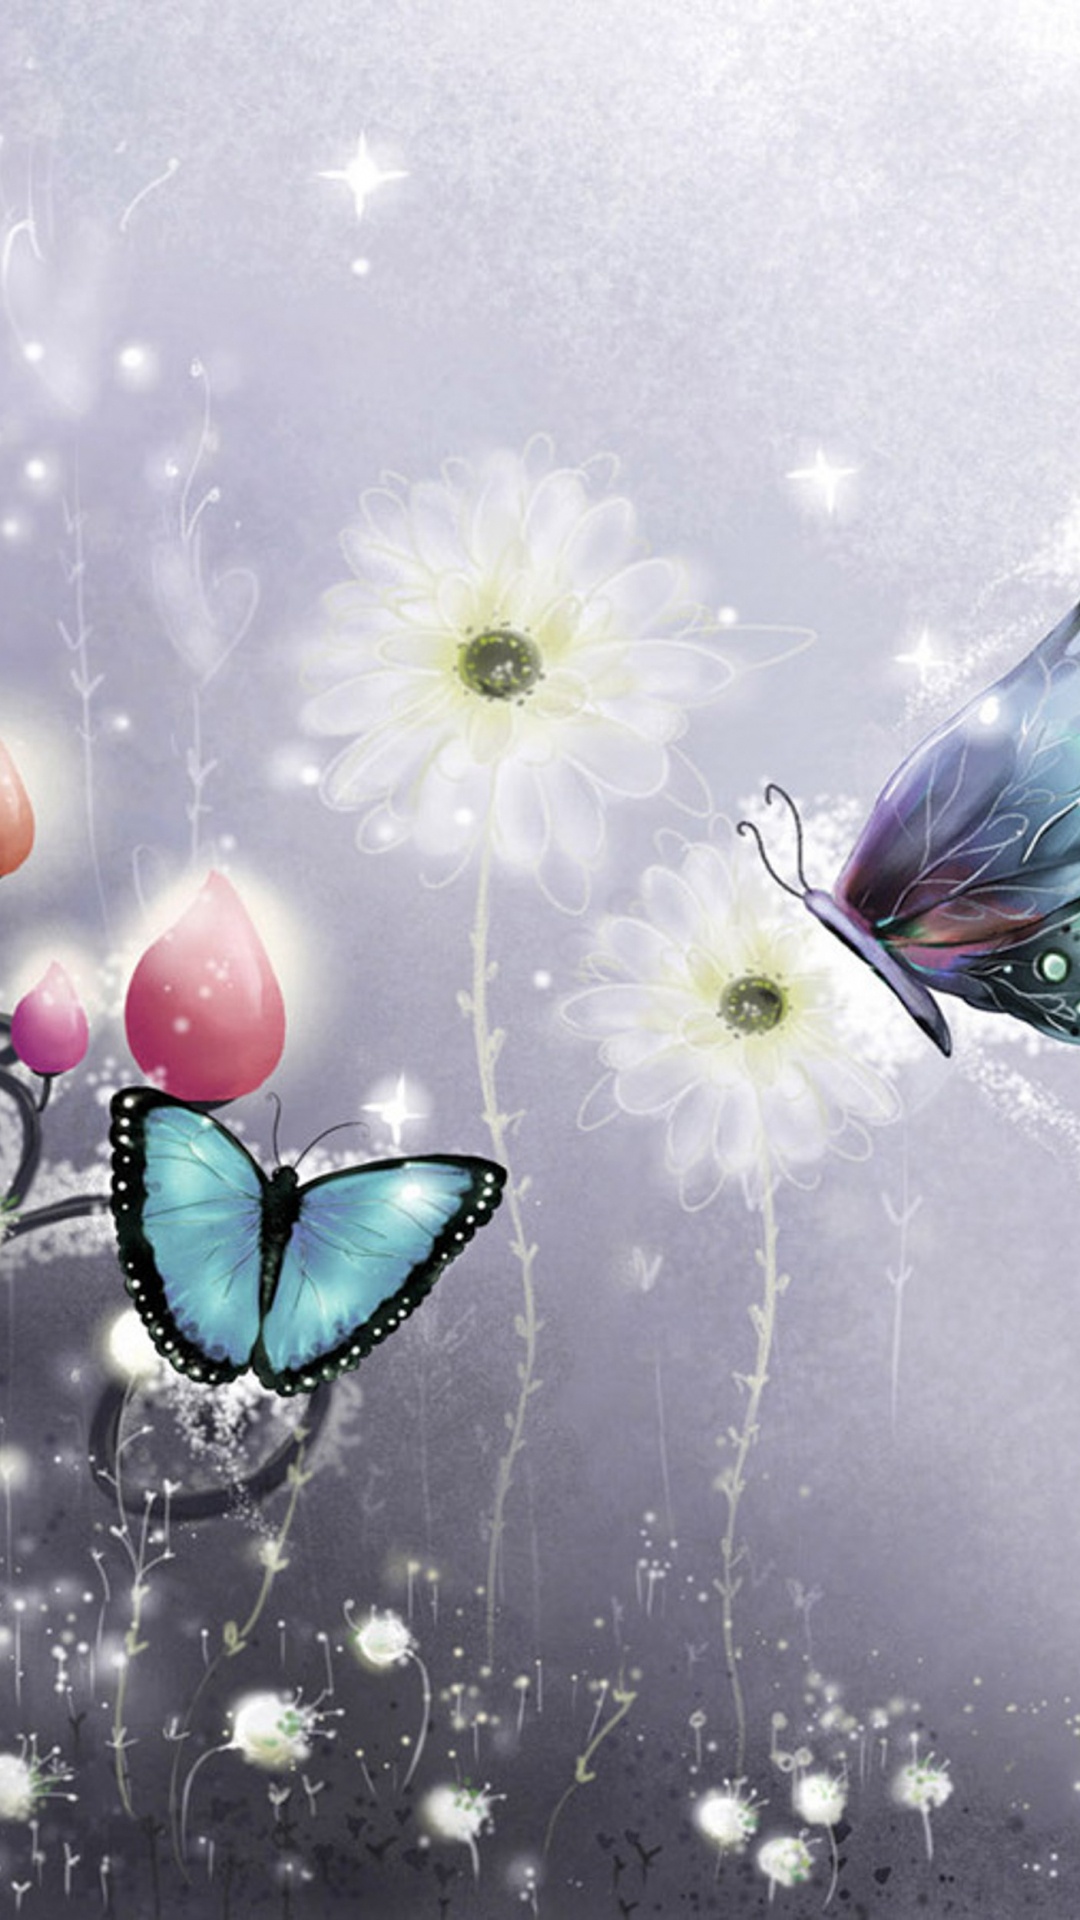 飞蛾和蝴蝶, 图形设计, 翼, 昆虫, 天空 壁纸 1080x1920 允许